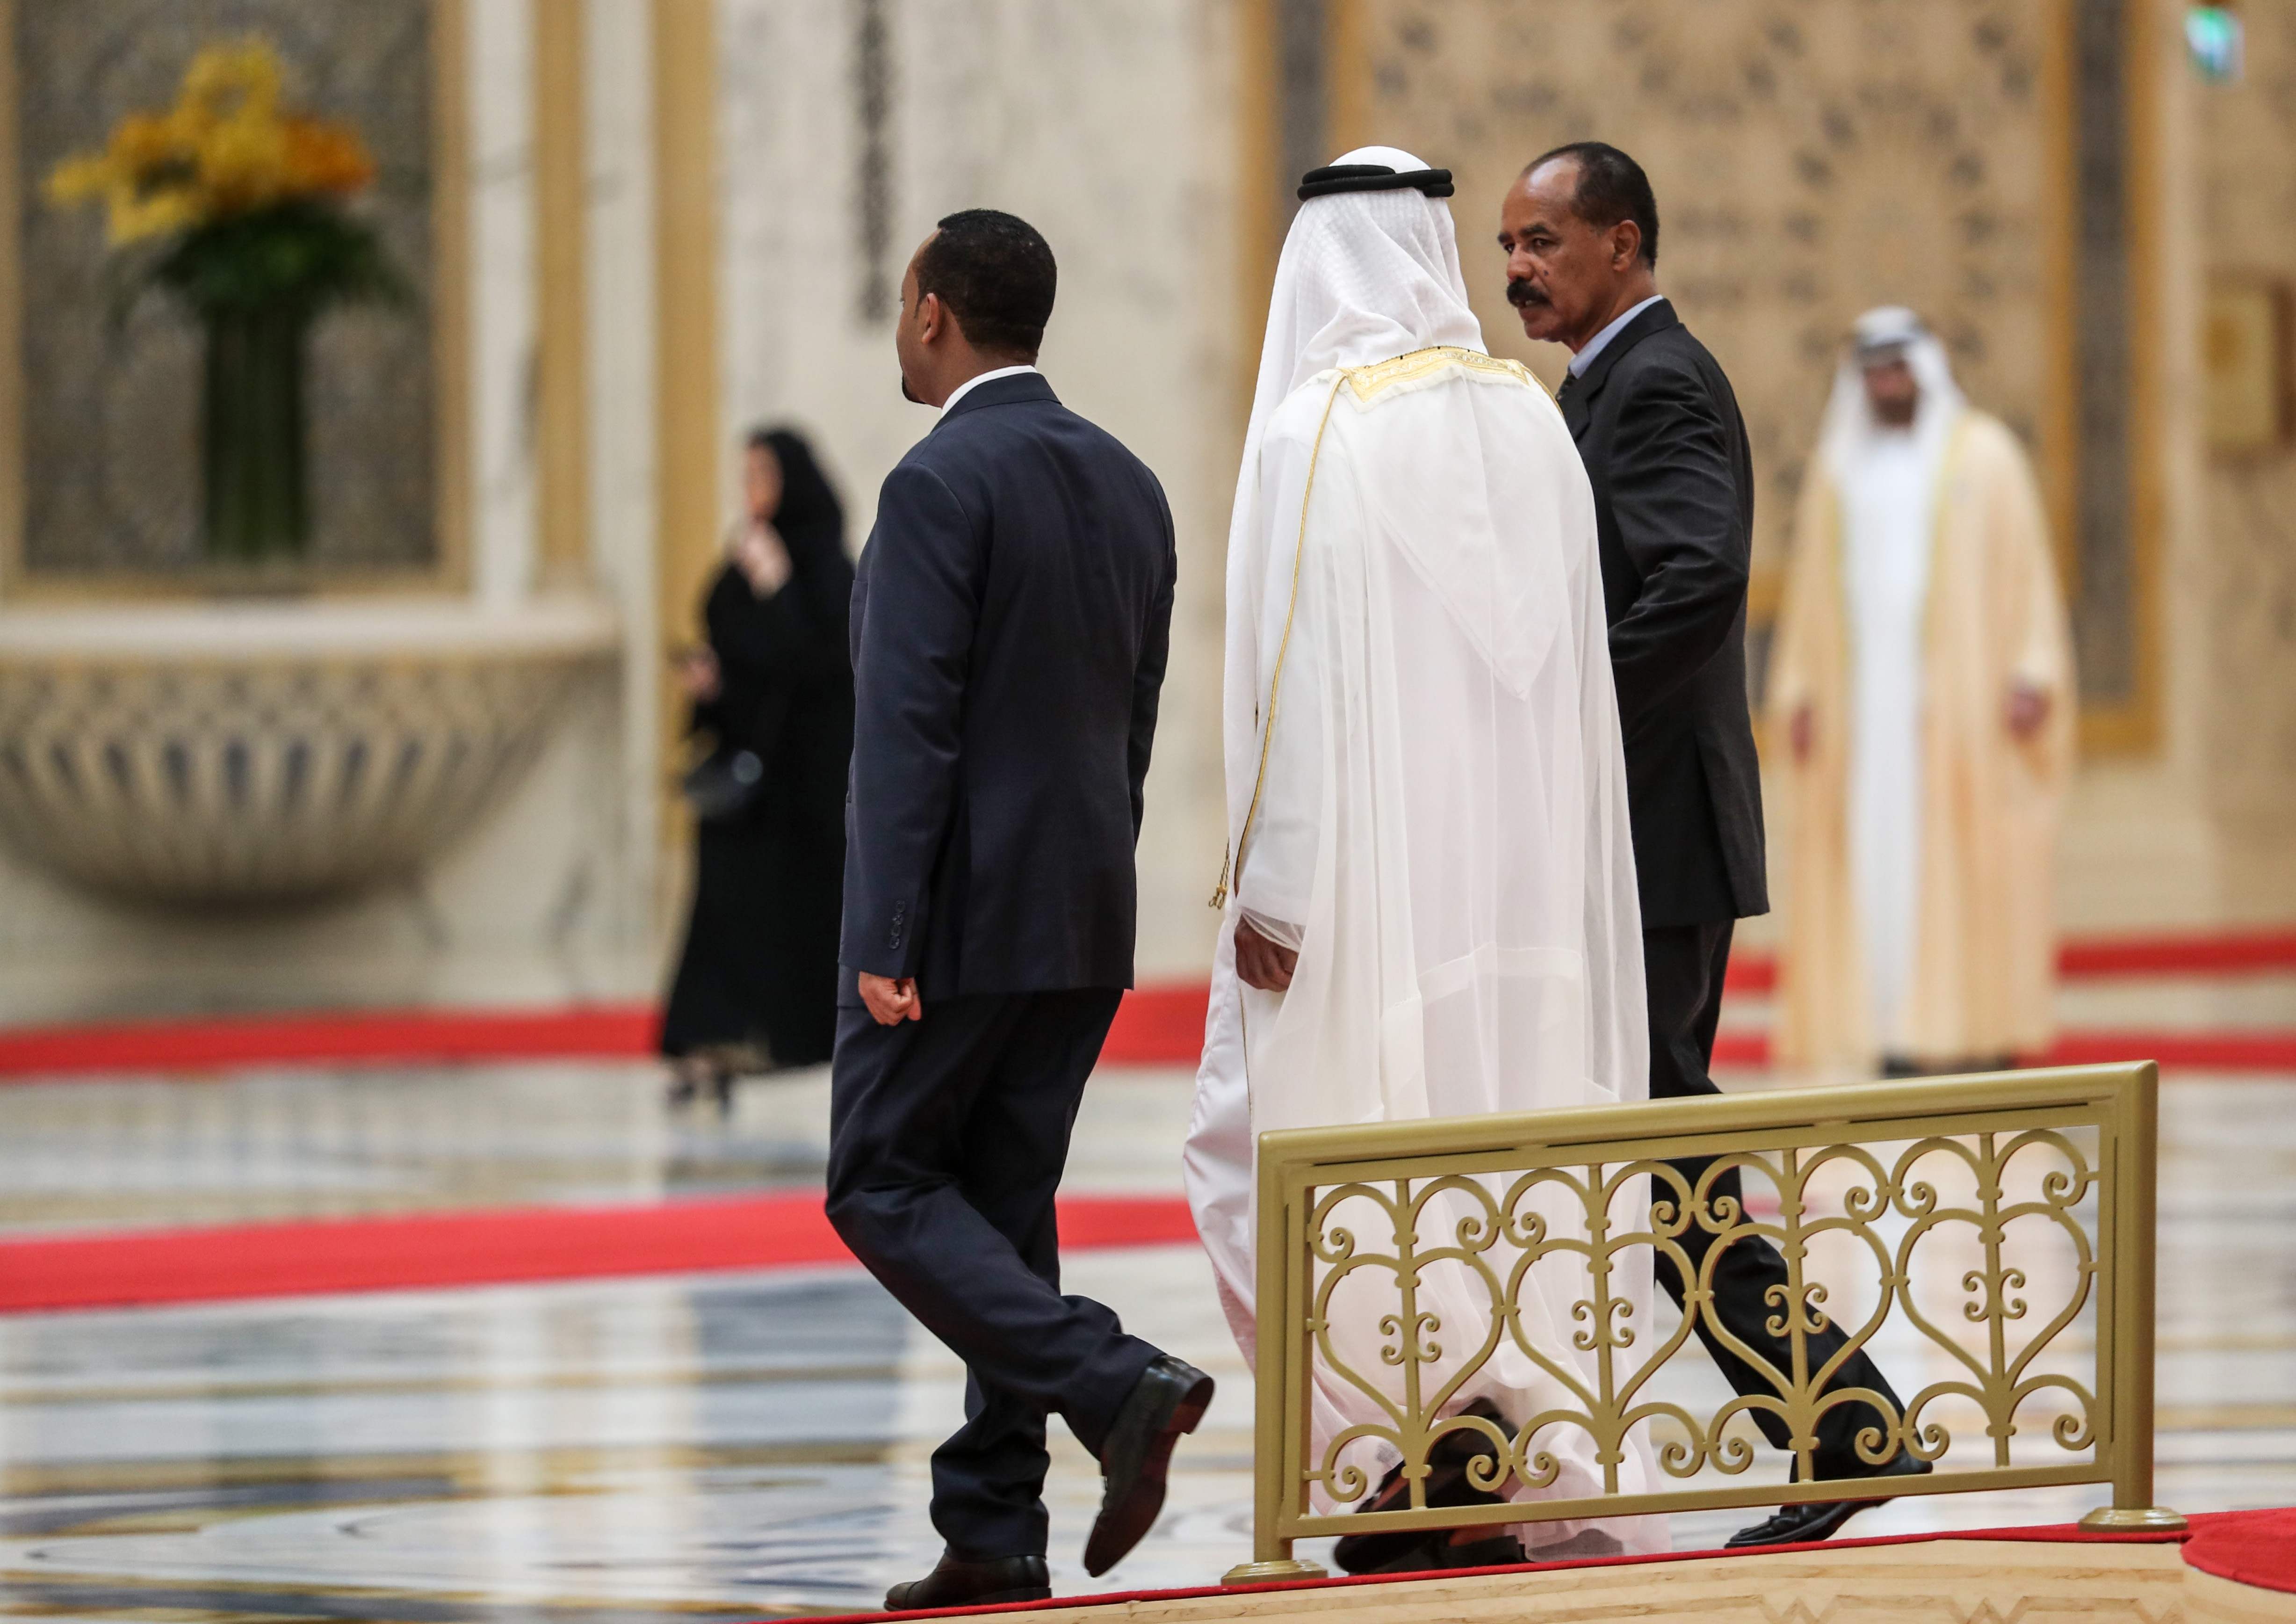 رئيس وزراء إثيوبيا يصافح أحد المسؤولين الإماراتيين